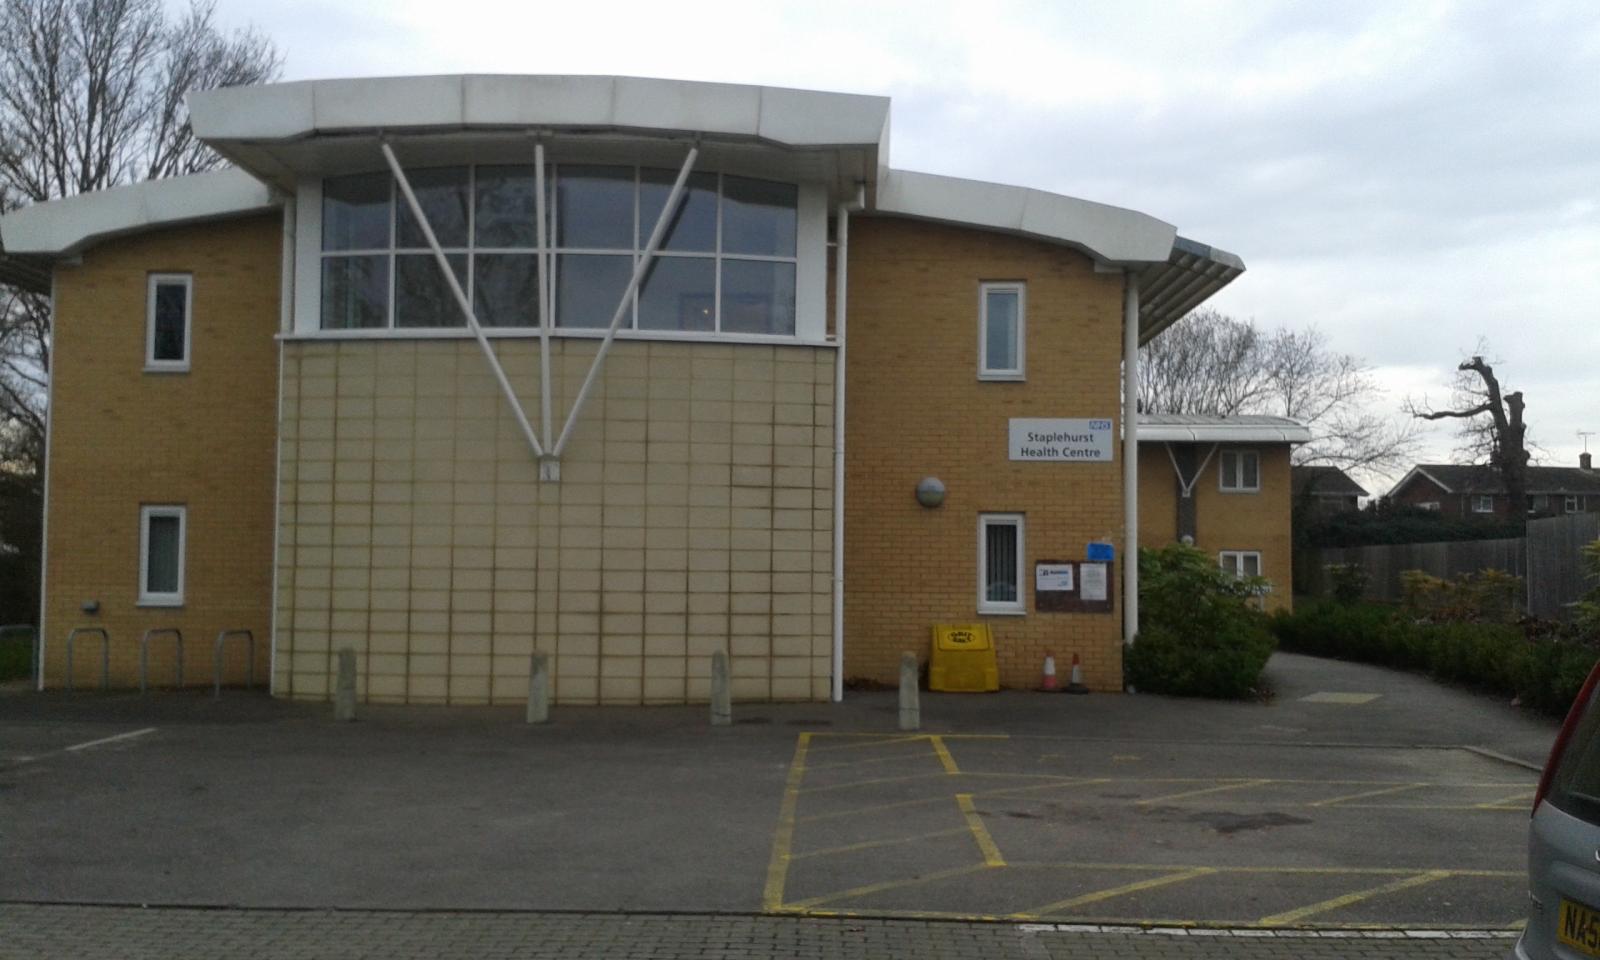 image of staplehurst health centre